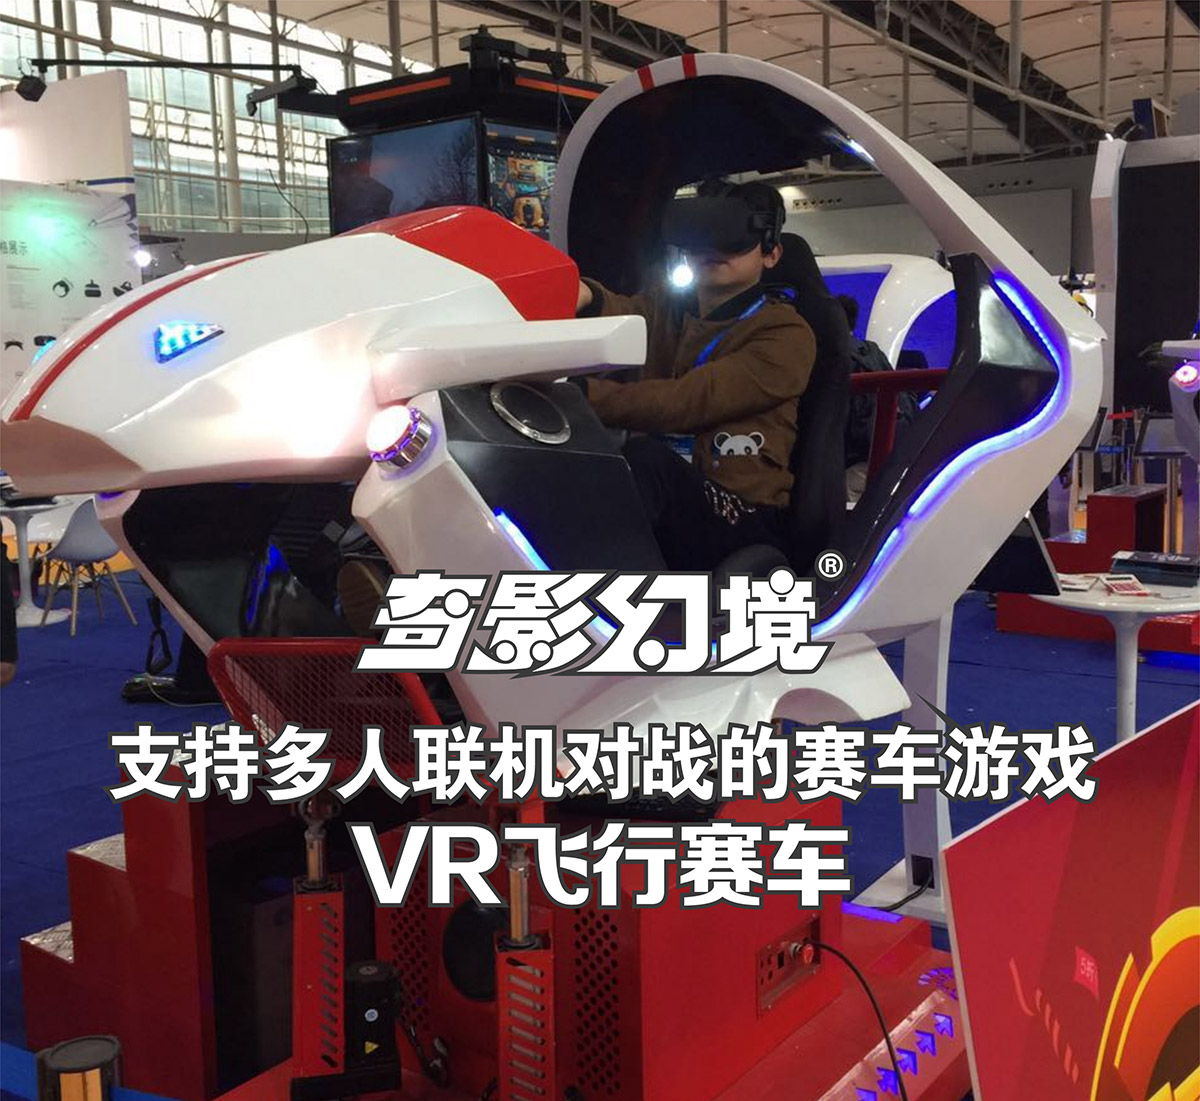 模拟体验VR飞行赛车多人联机对战.jpg